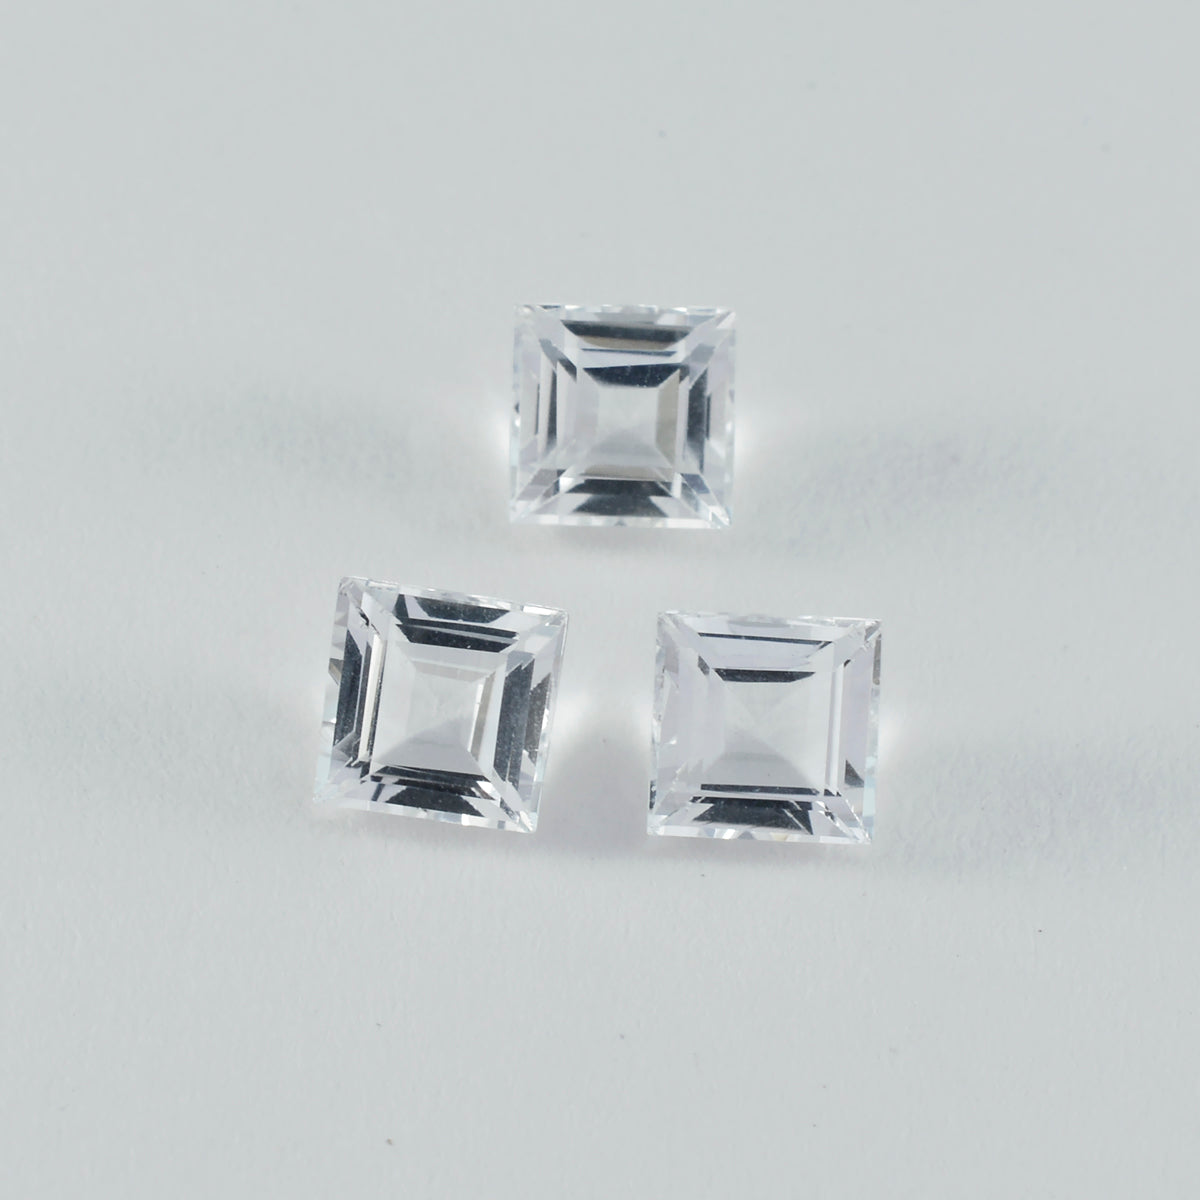 riyogems 1шт белый кристалл кварца ограненный 10х10 мм квадратной формы красивый качественный камень